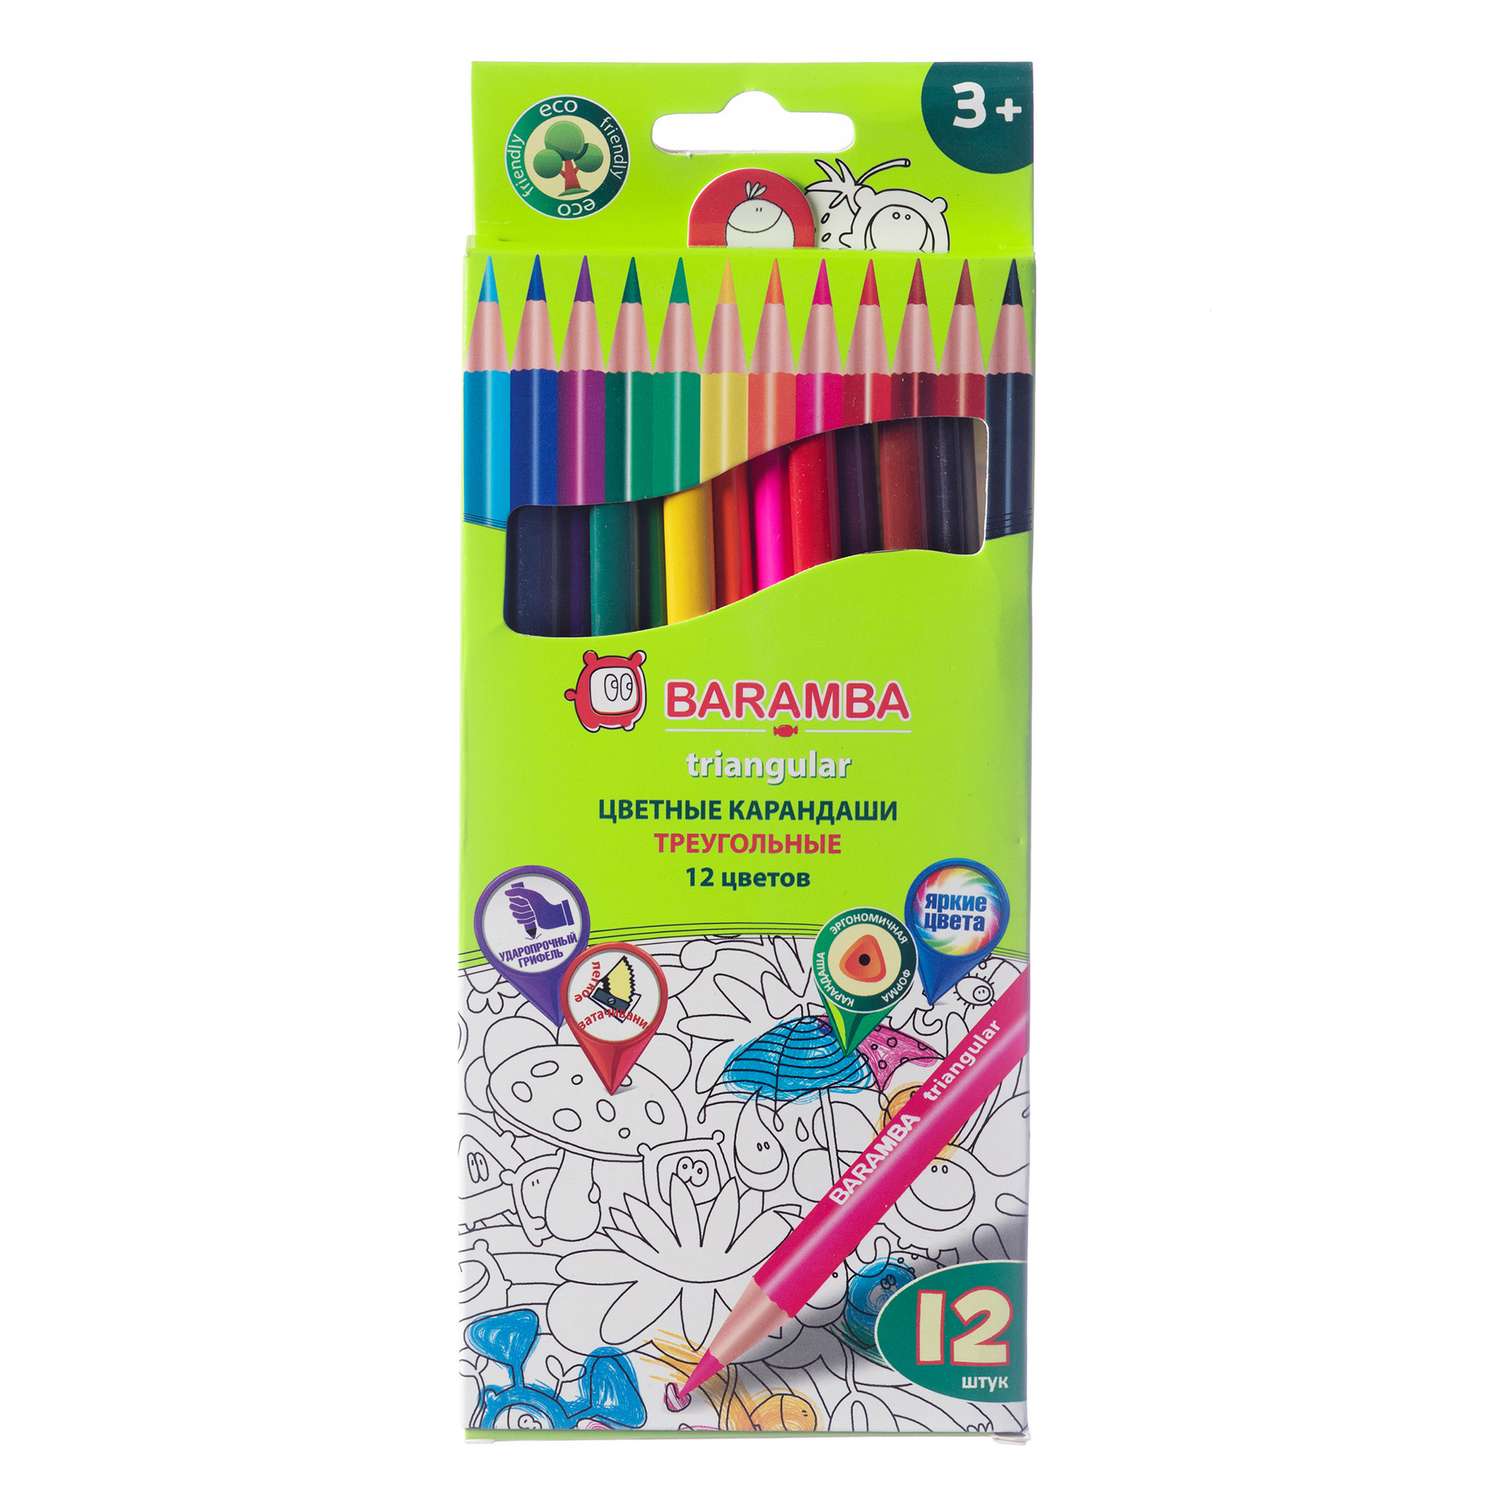 Цветные карандаши Baramba 12 цветов треугольные - фото 1